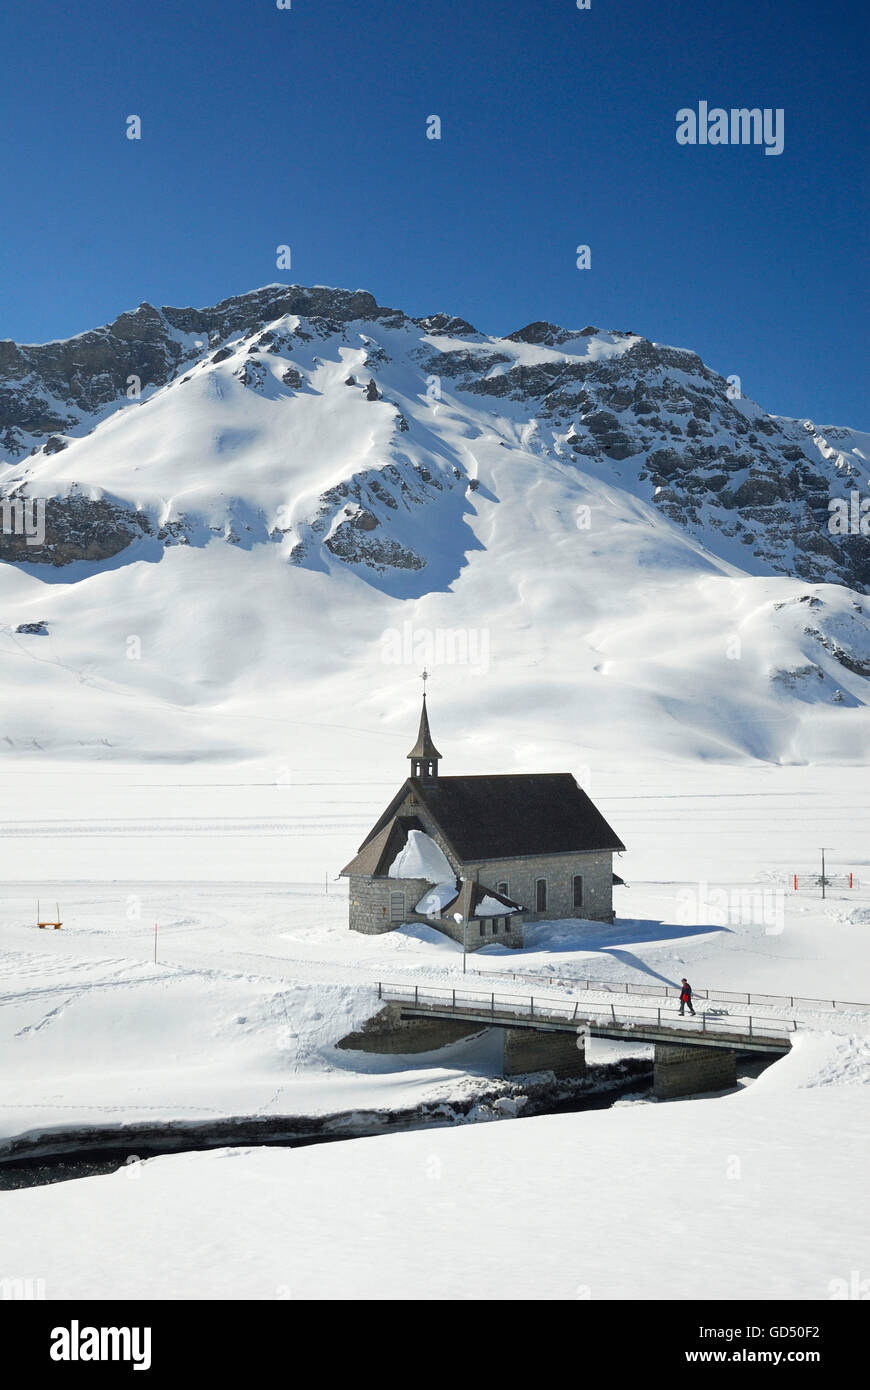 Melchsee-Frutt, Kapelle und zugefrorener Melchsee, Skigebiet in den Schweizer Alpen, Kanton Obvaldo, Schweiz, Europa Foto Stock